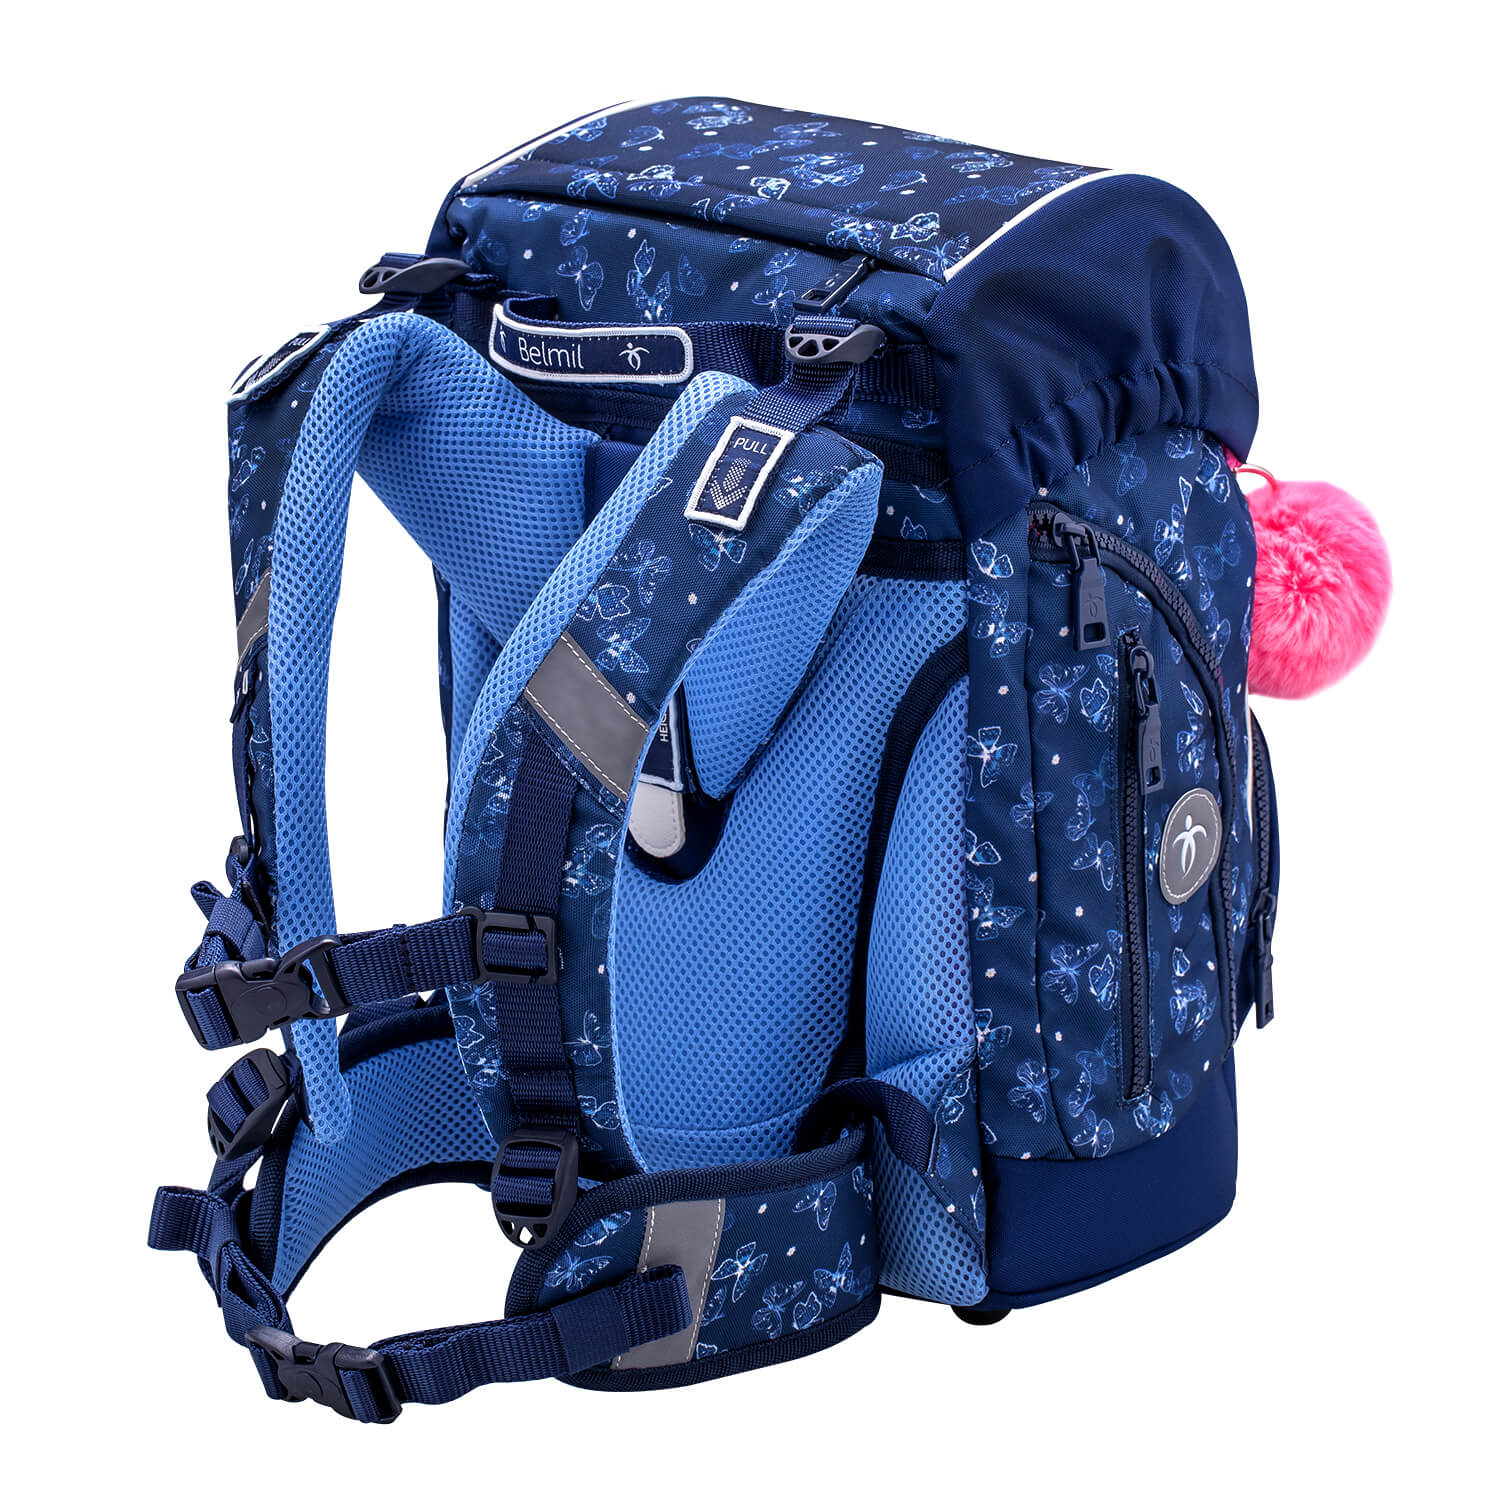 Premium Comfy Plus Sapphire Schoolbag set 5pcs.